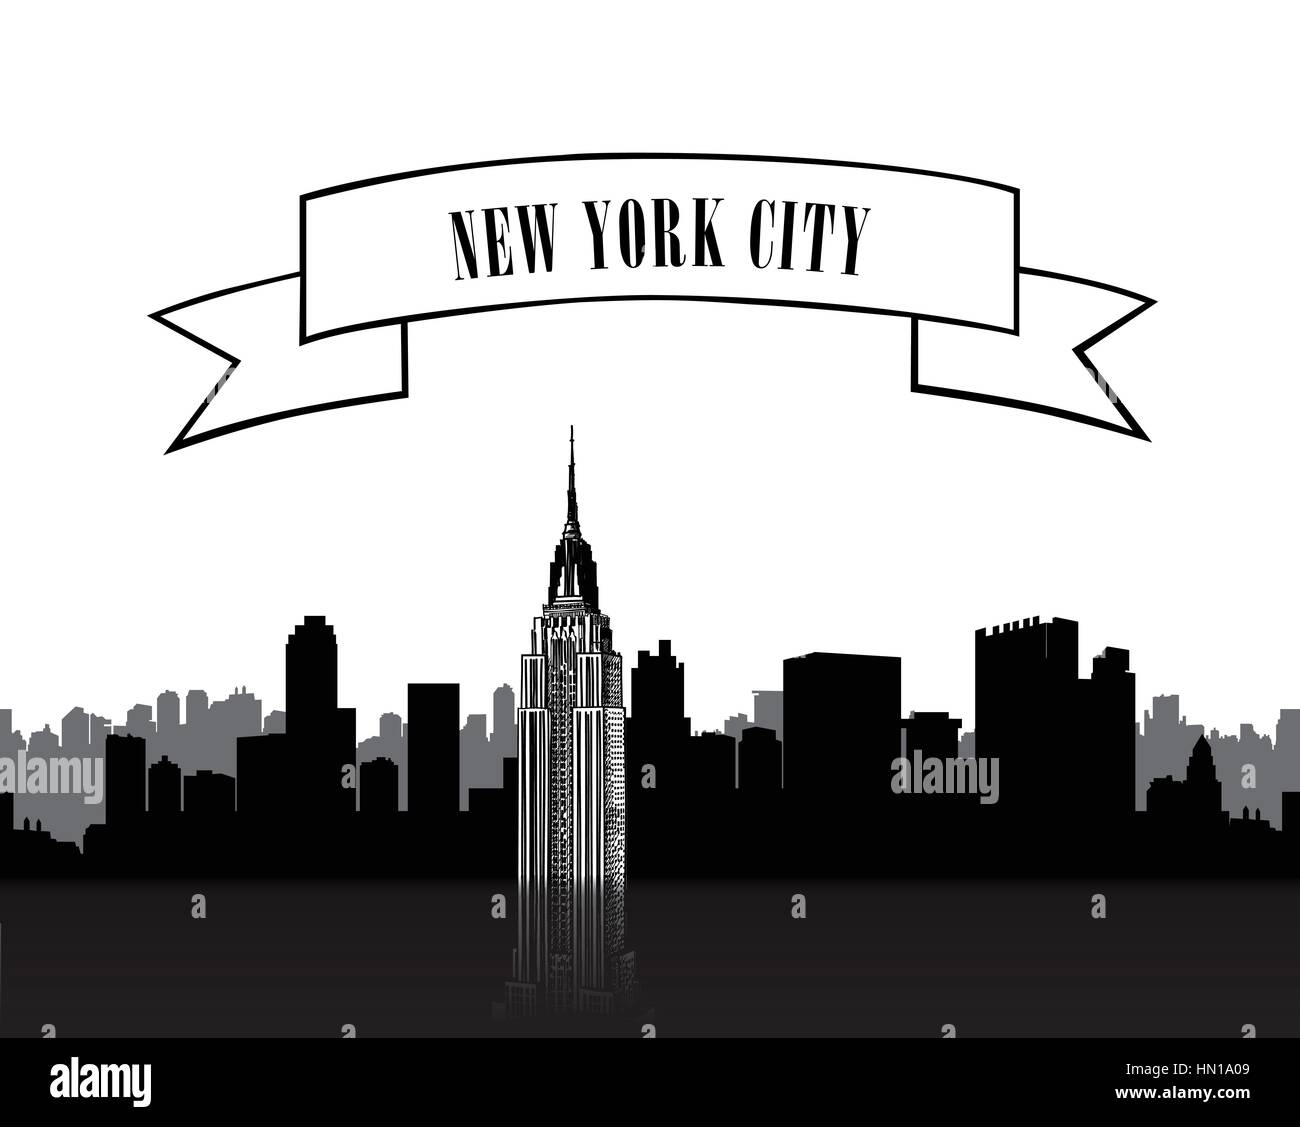 New york city skyline silhouette aux chanter sur bow over white background Illustration de Vecteur